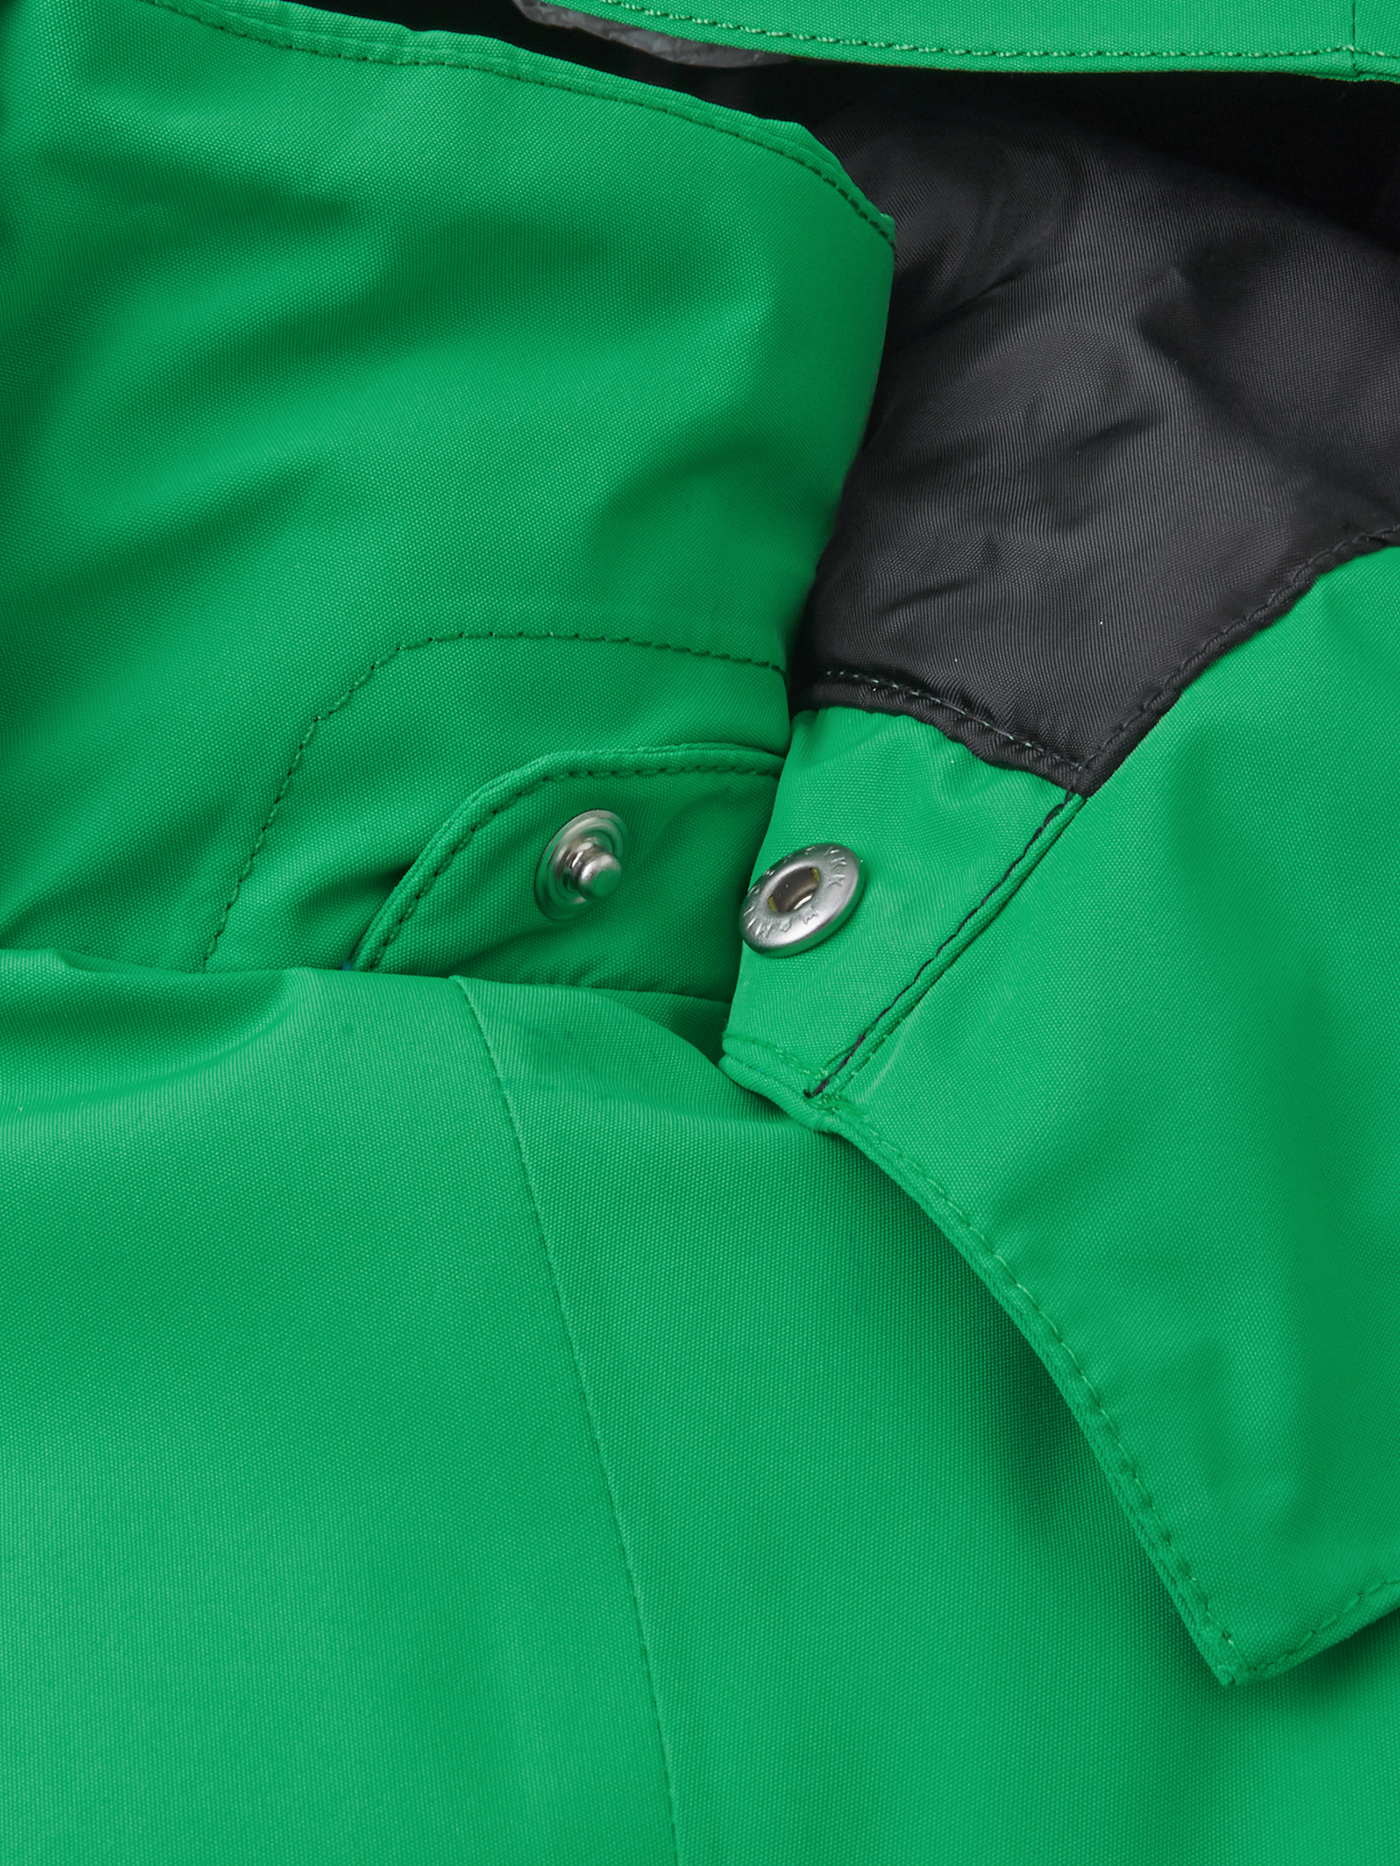 Reiman Reimatec Tieten -laskettelutakki vihreässä sävyssä lähikuvassa hupun neppari